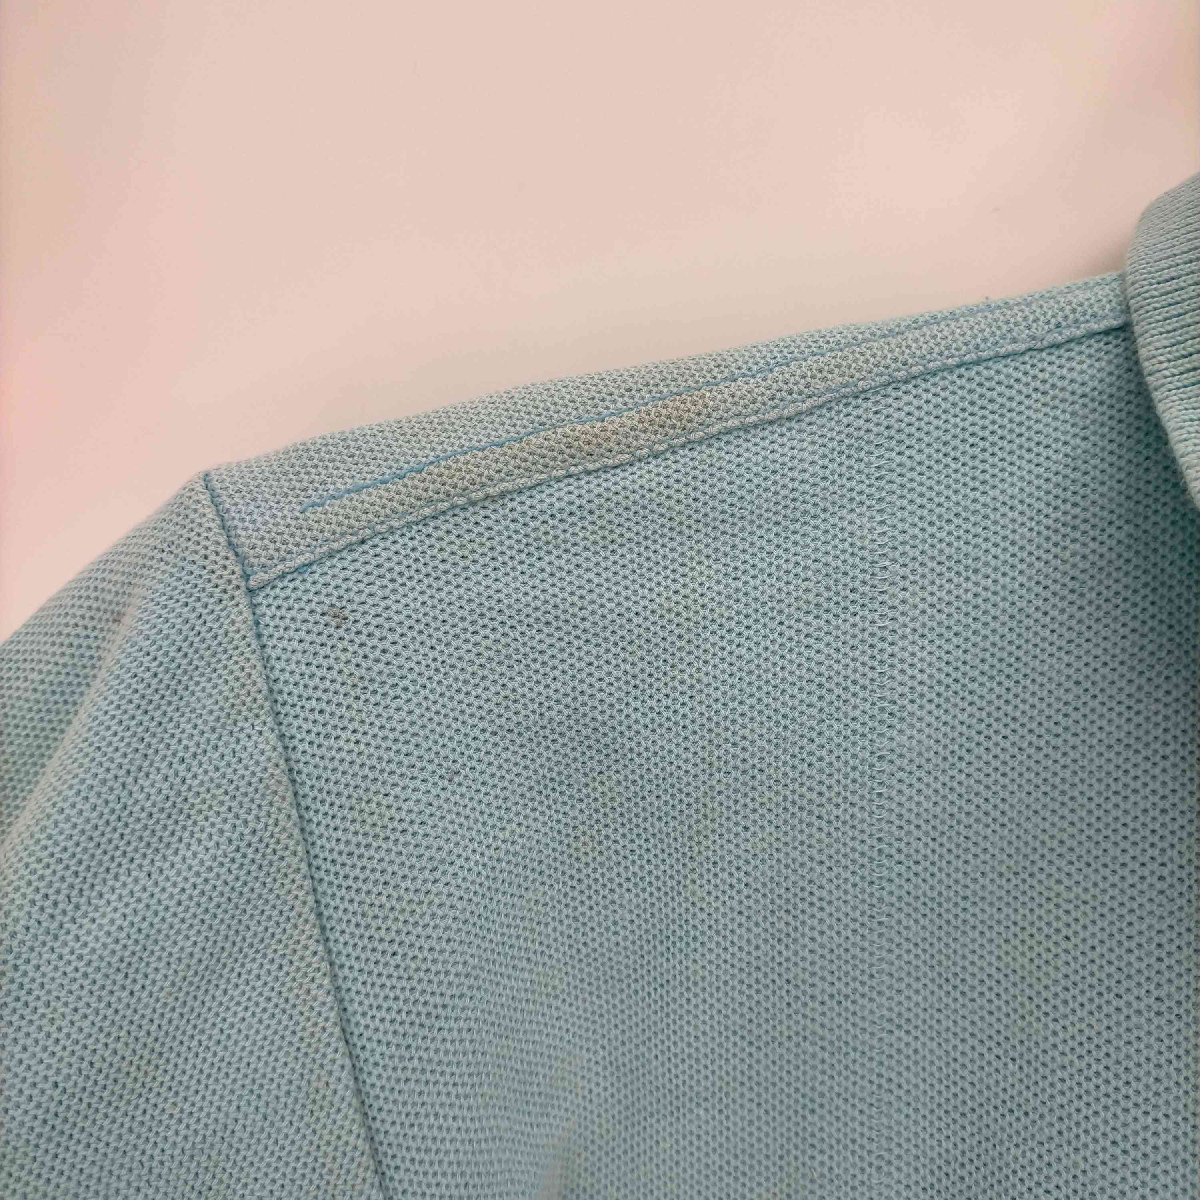 CHEMISE LACOSTE(シュミーズ ラコステ) フランス製 ロゴワッペン 半袖ポロシャツ メンズ 中古 古着 0929_画像4